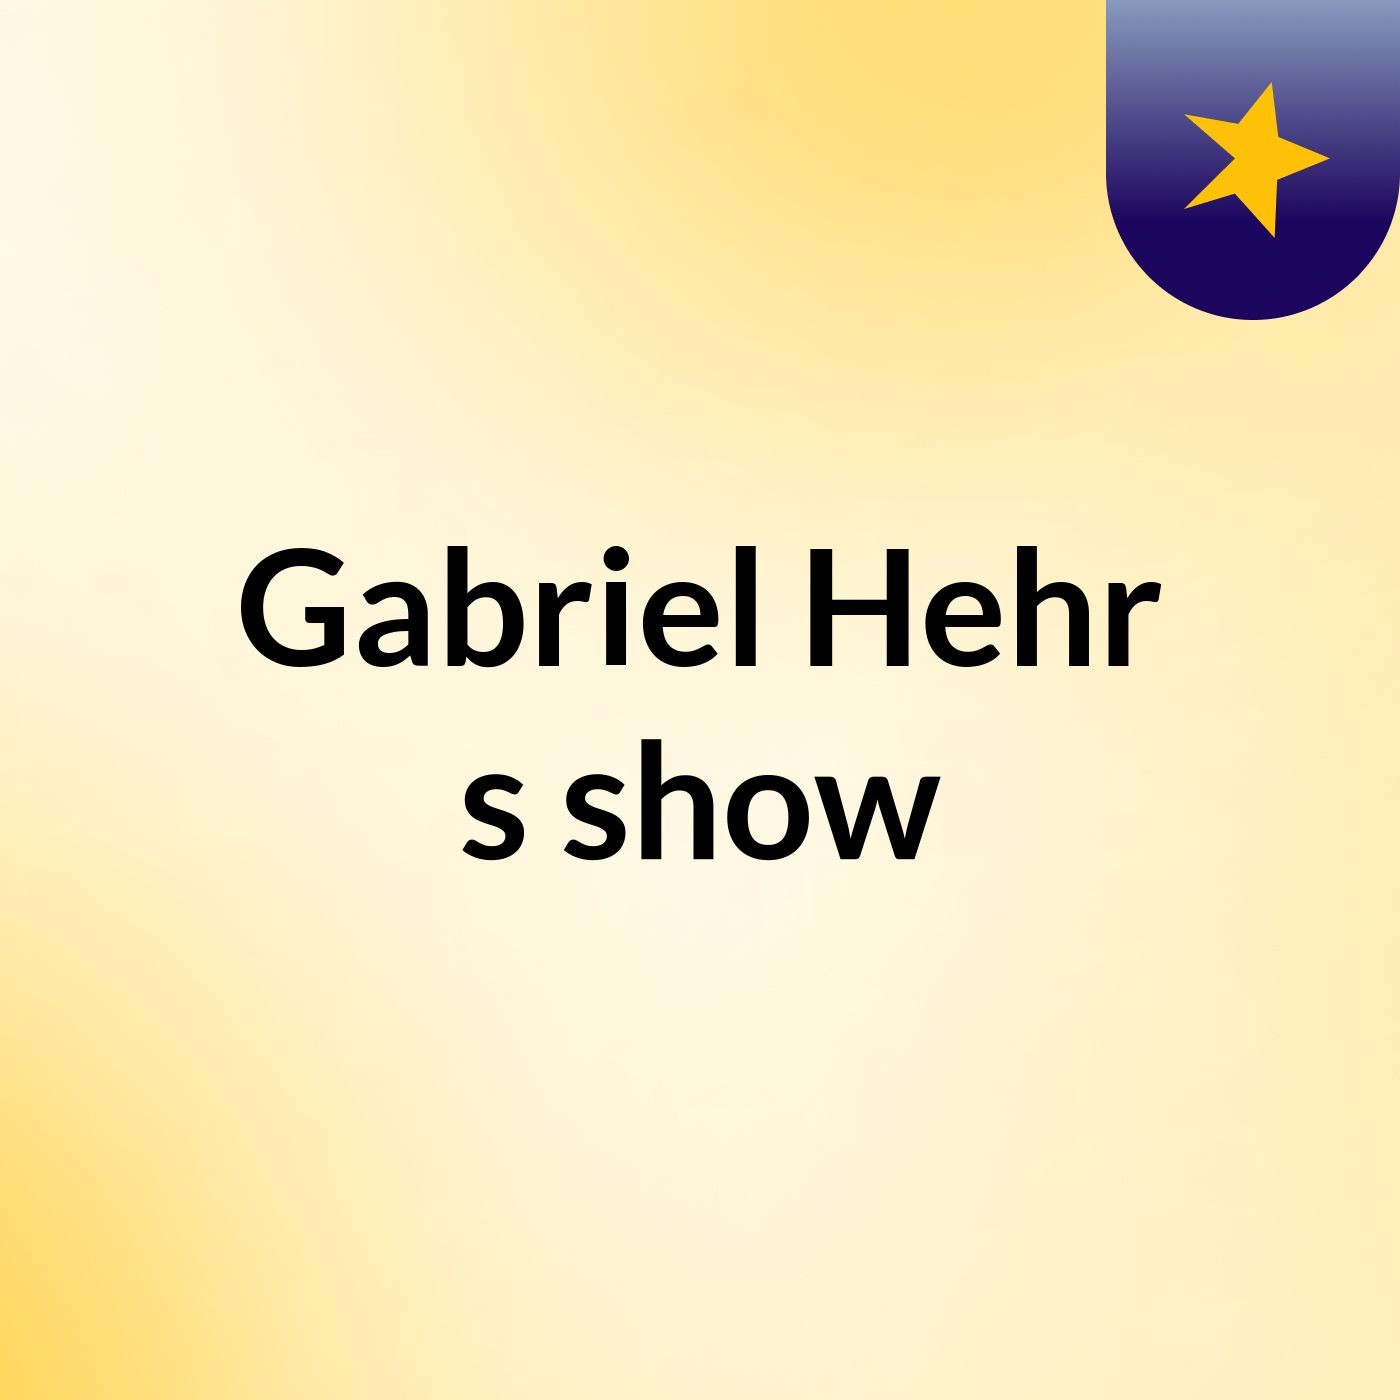 Gabriel Hehr's show